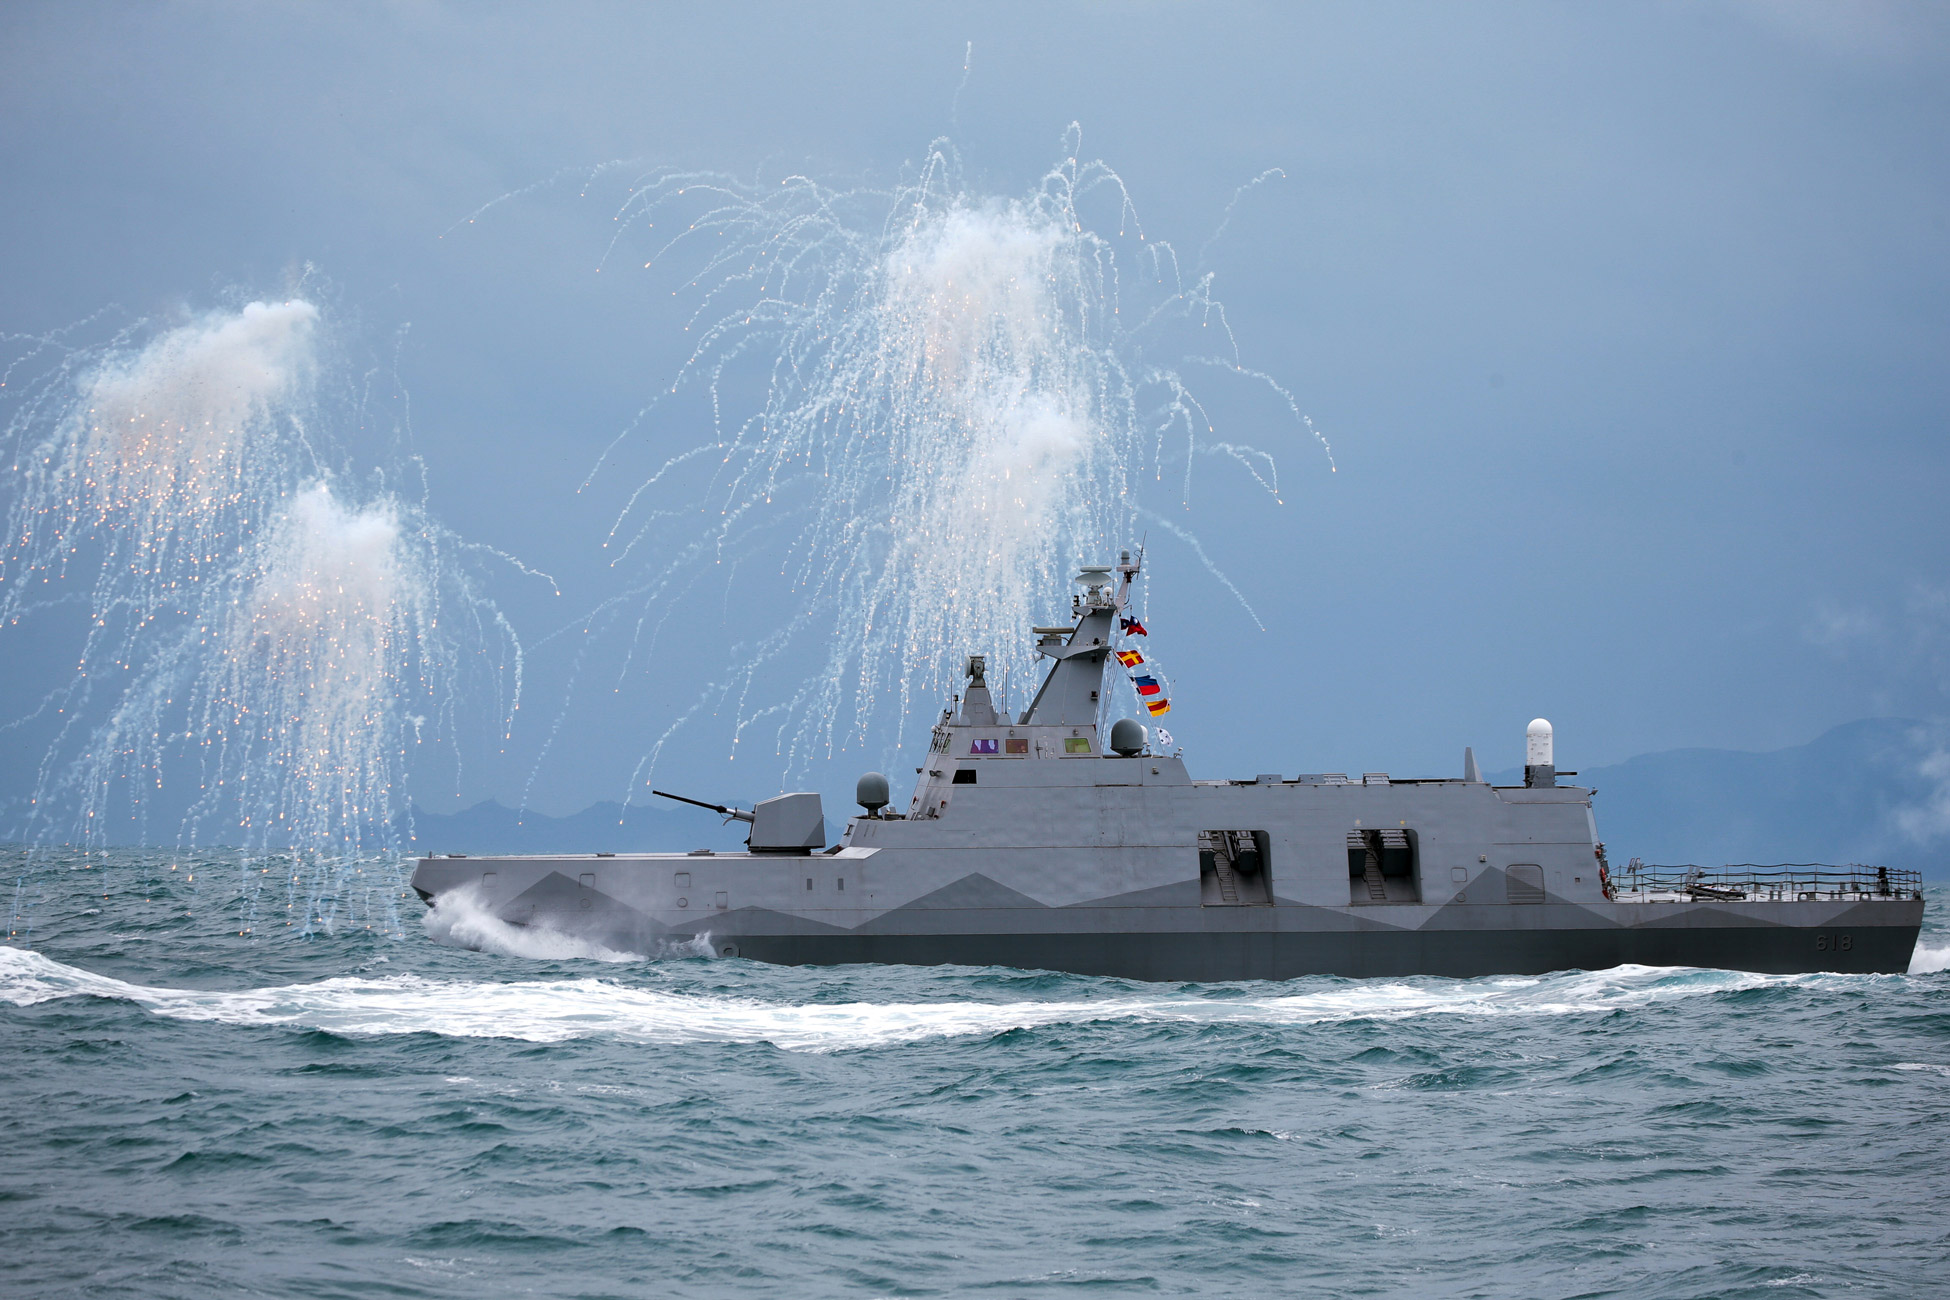 طراد من أسطول تايوان من فئة Tuo Chiang يطلق أفخاخًا أثناء تدريبات عسكرية قبالة سواحل Keelung ، تايوان ، في 7 يناير.